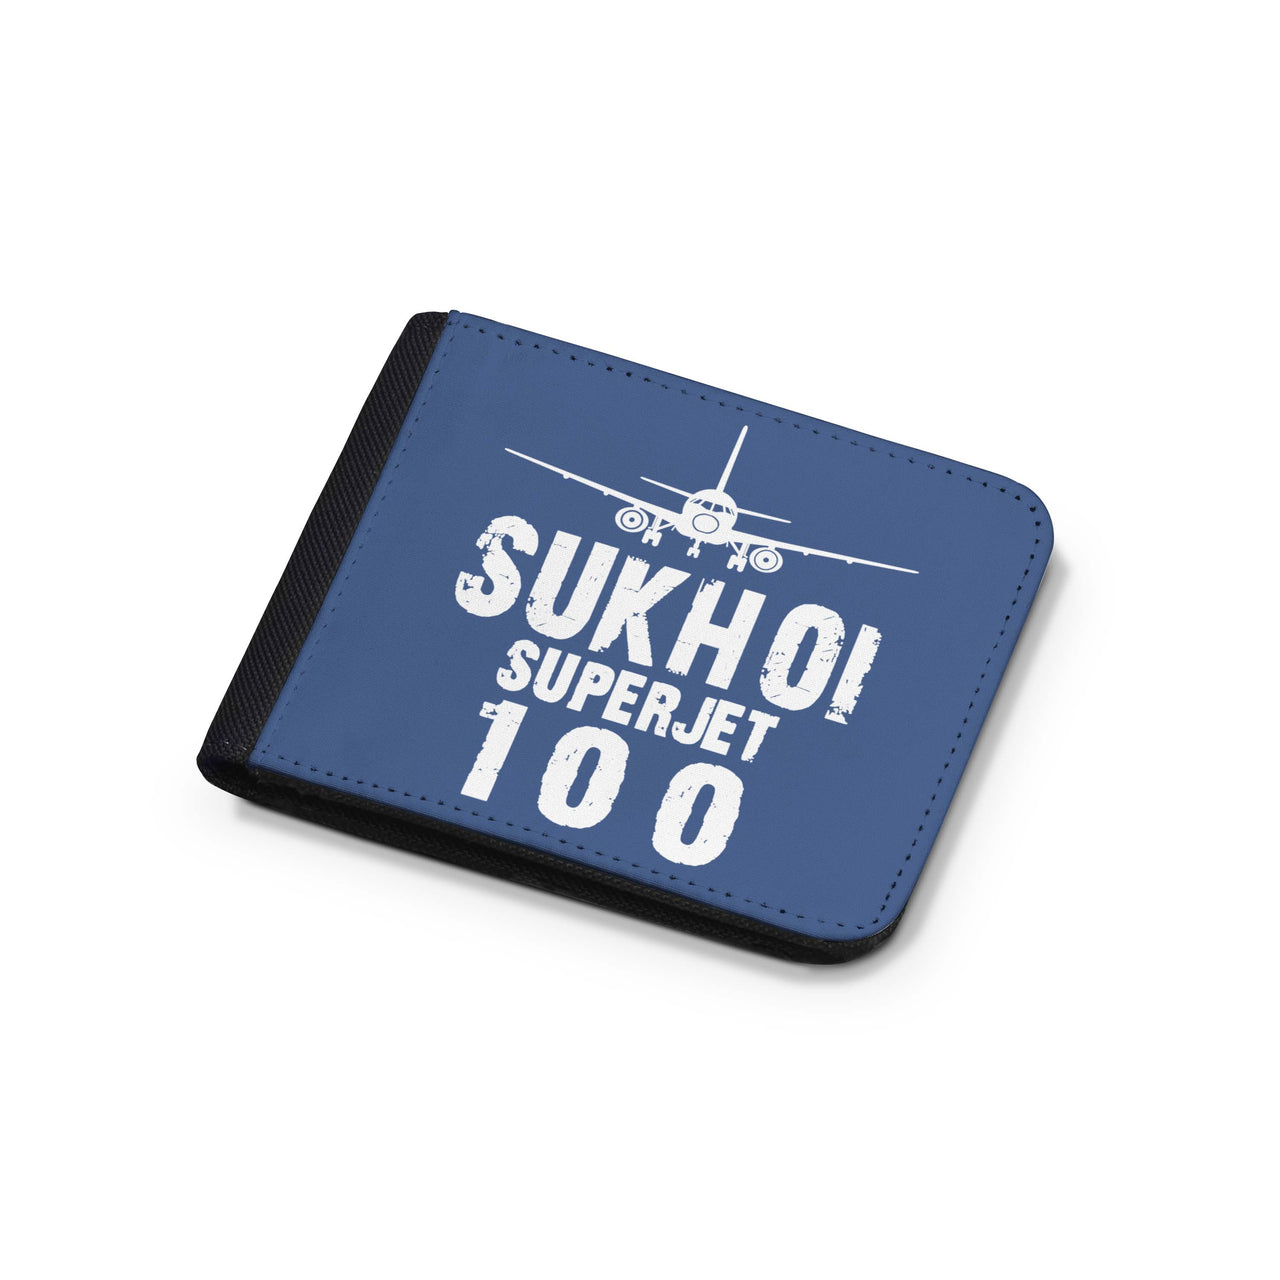 Sukhoi Superjet 100 & Plane Designed Wallets